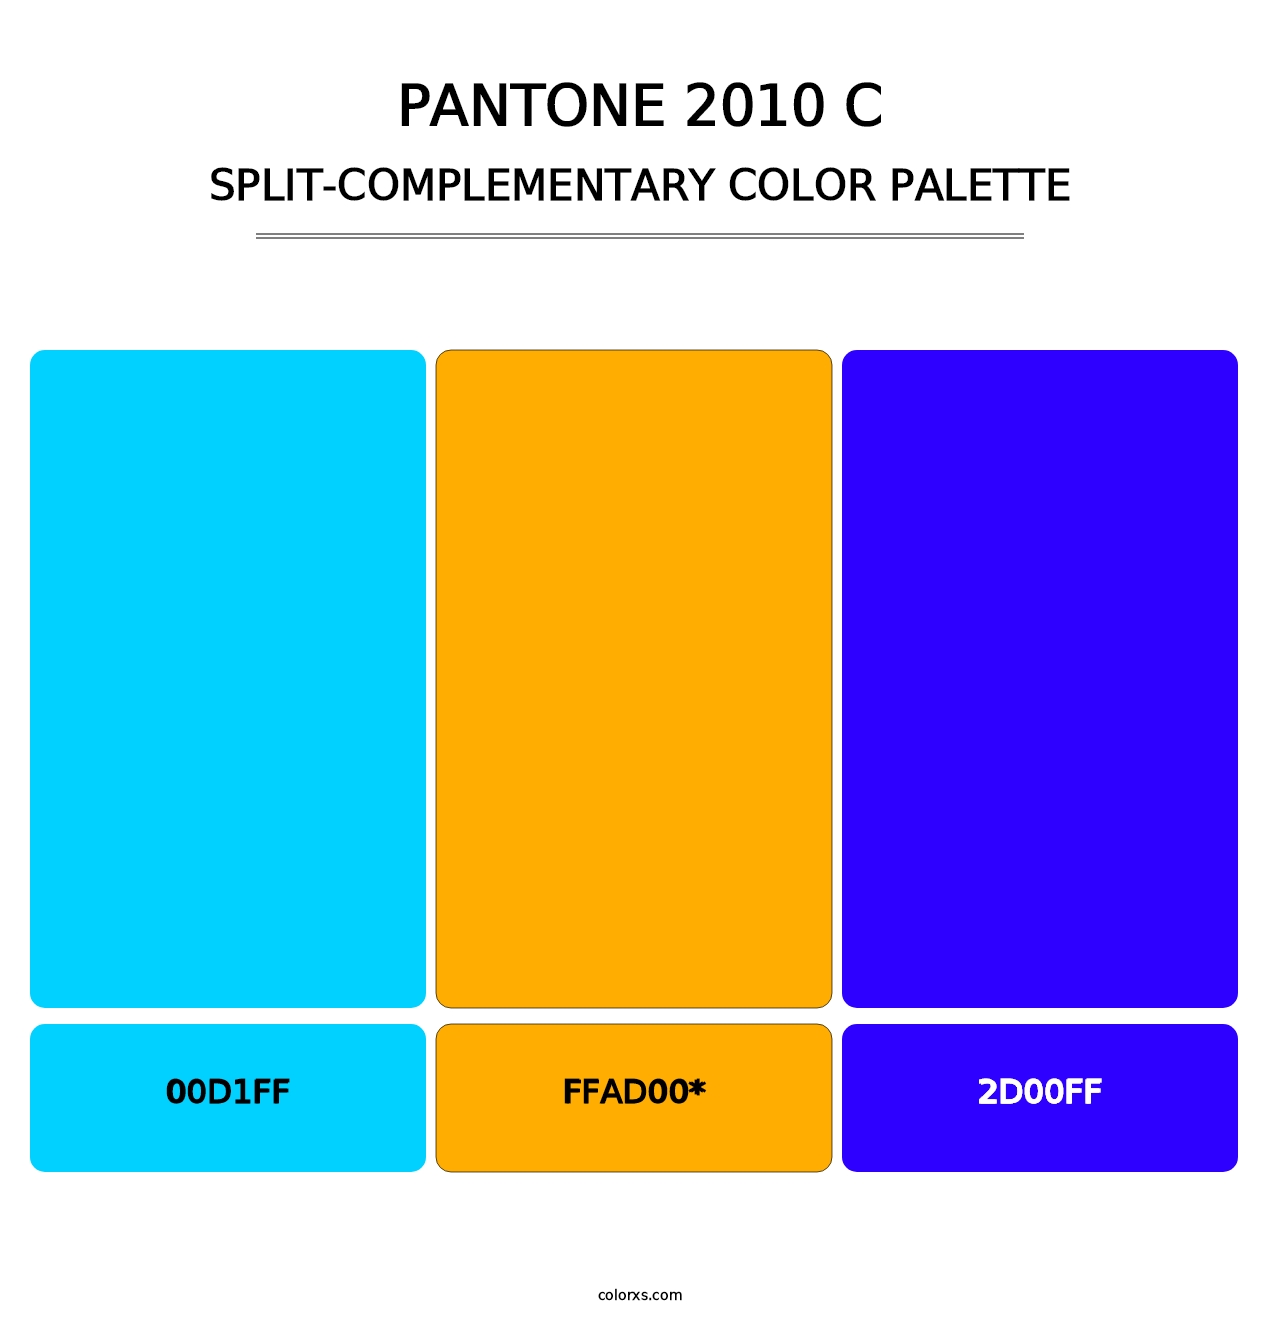 PANTONE 2010 C - Split-Complementary Color Palette